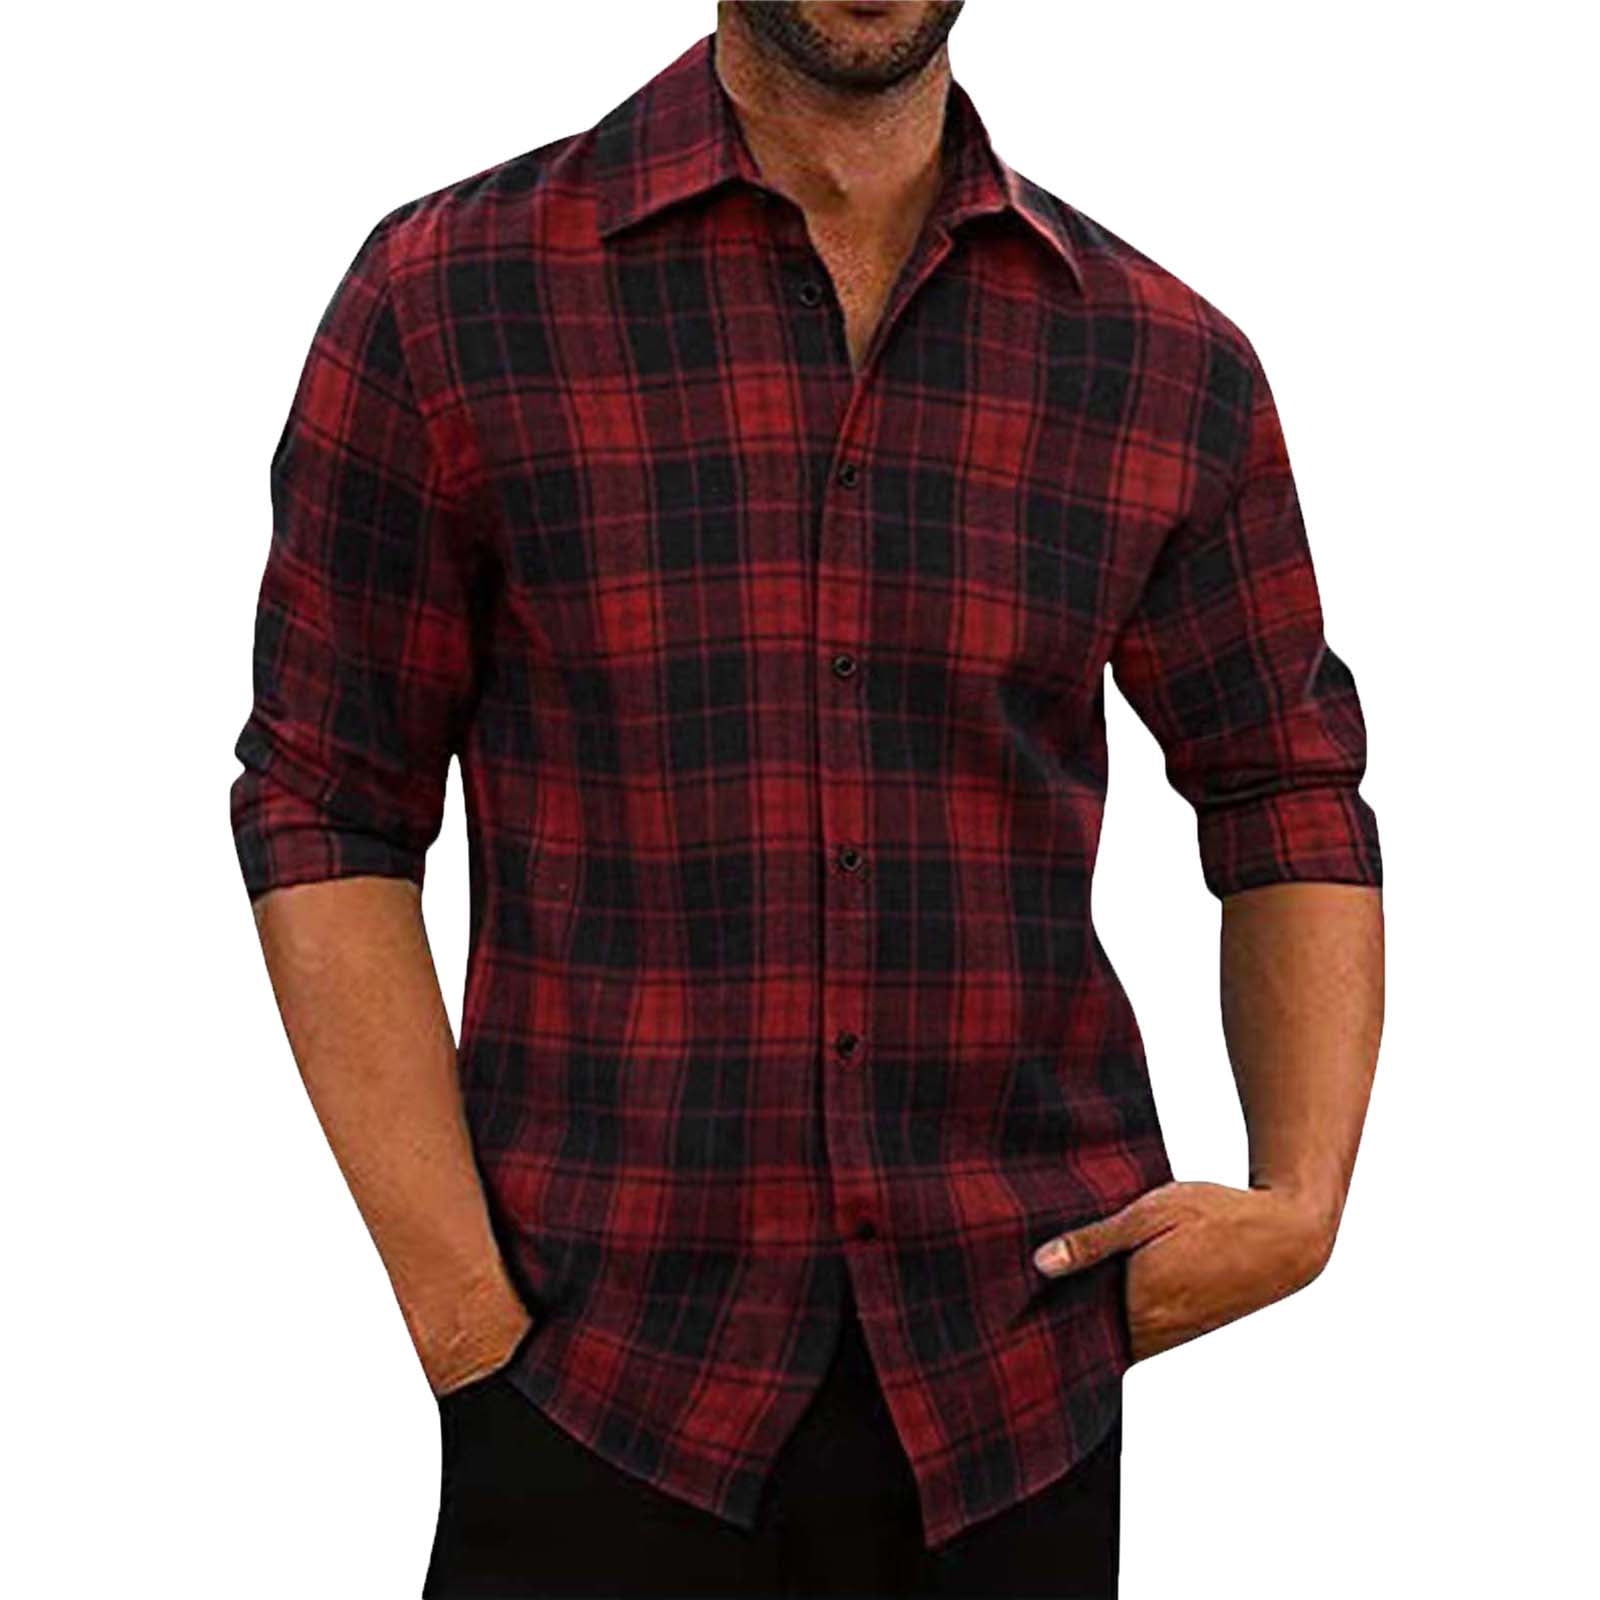 DDAPJ pyju Men's Causal Flannel Plaid Shirts Clearance Sales,Lightweight Long  Sleeve Lapel Shirt Jackets Regular Fit Button Down Work Shirt 